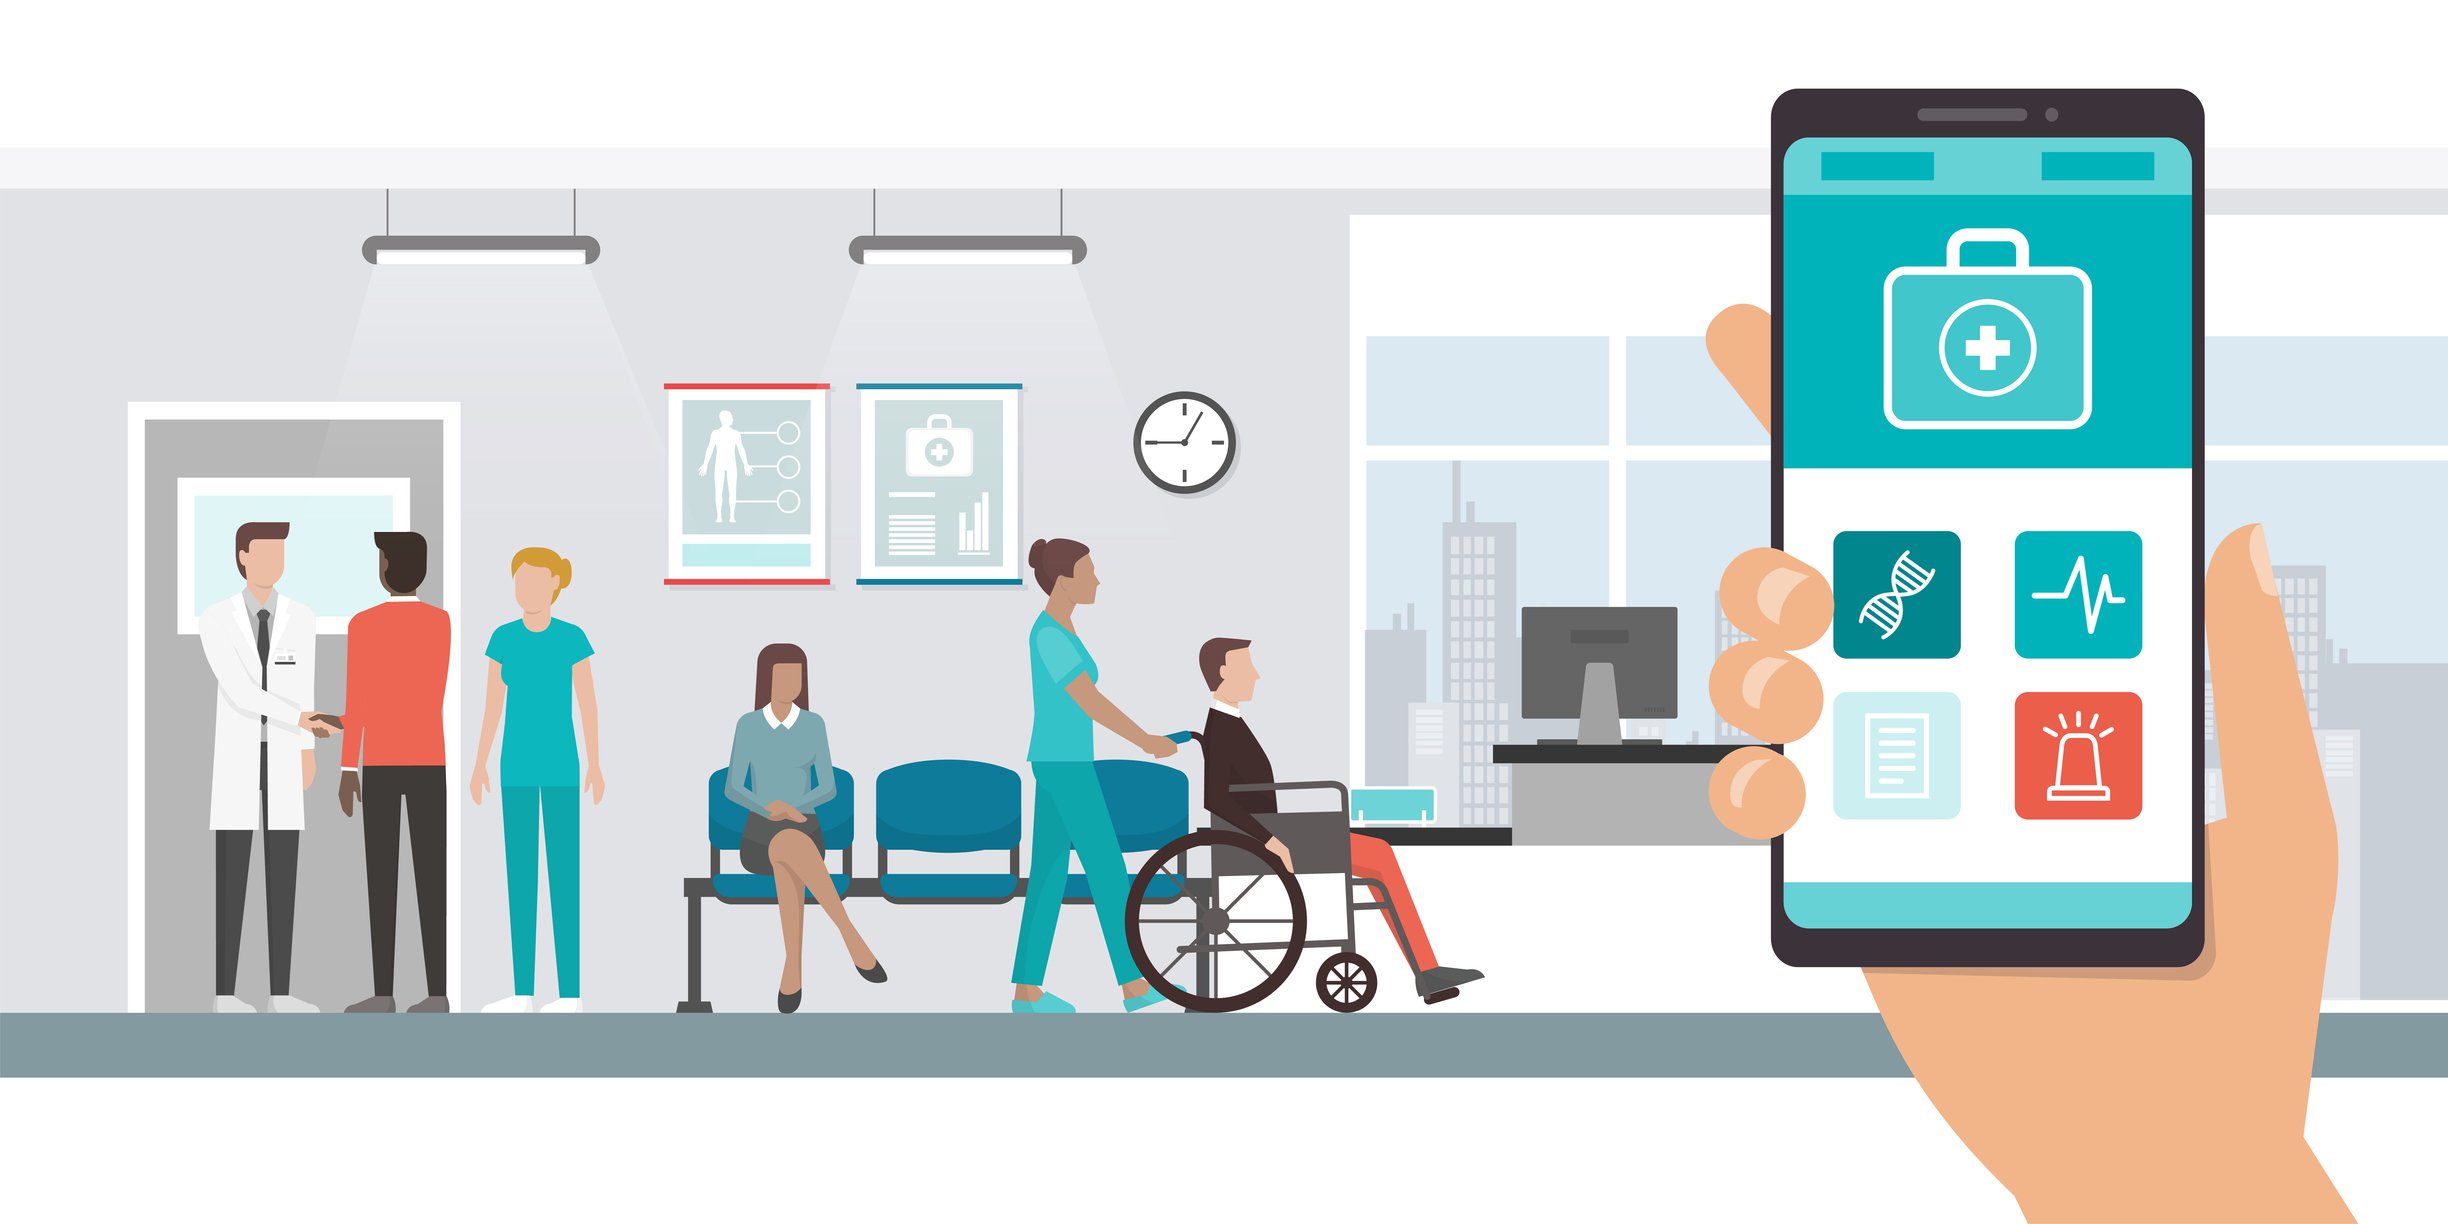 Illustration eines Wartezimmers mit Patienten und einer digitalern Patientenakte auf einem Smartphone